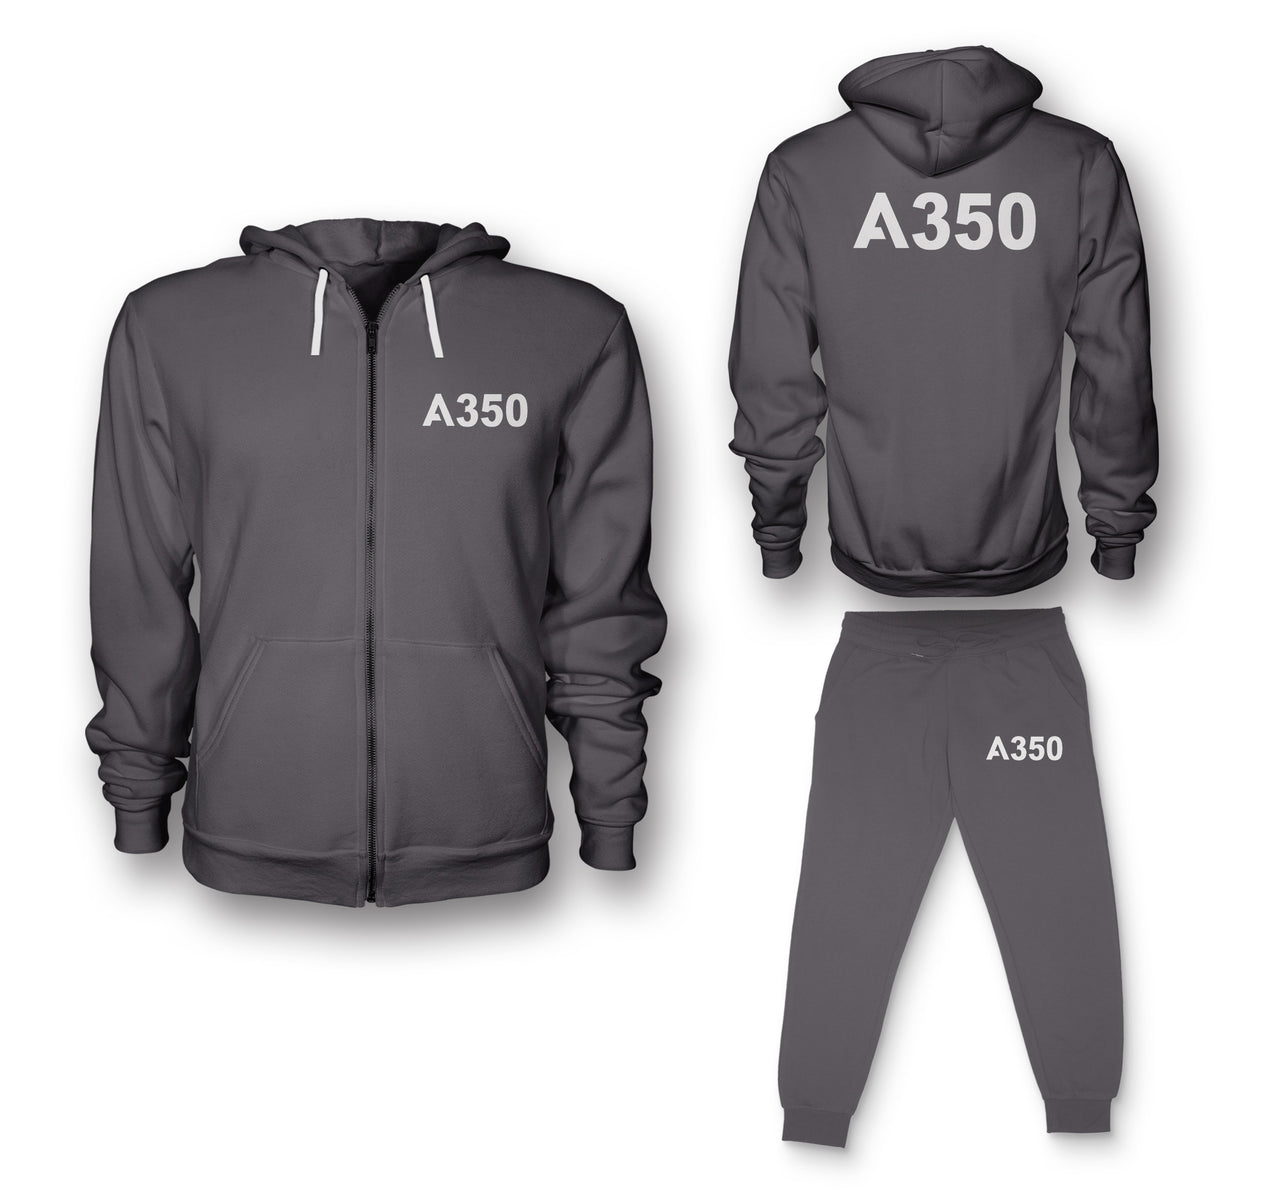 A350 Flat Text Designed Zipped Hoodies & Sweatpants Set